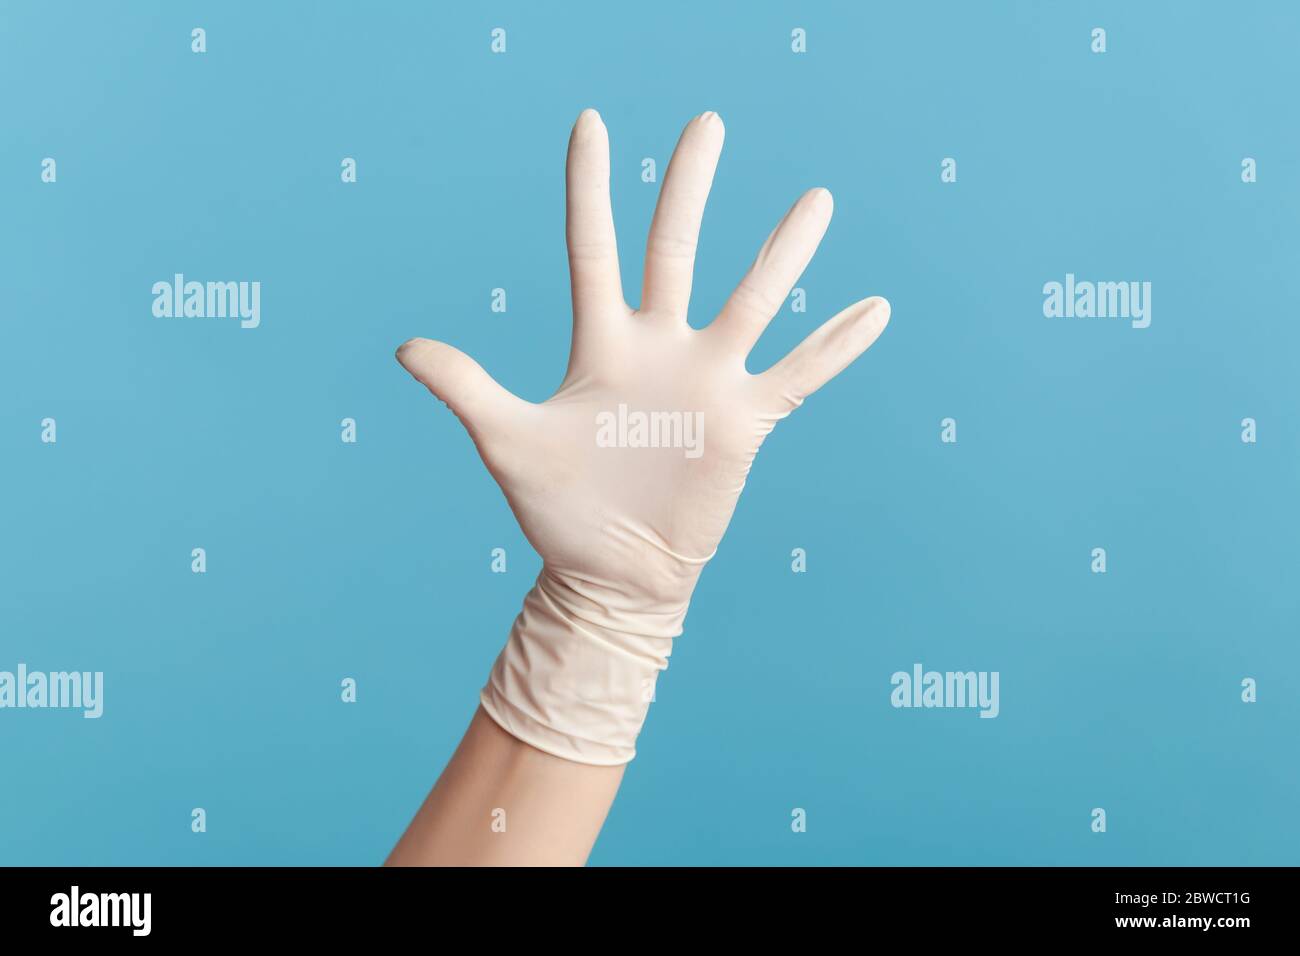 Profilo Vista laterale primo piano della mano umana in guanti chirurgici bianchi che mostrano il numero cinque con la mano o con la mano che ondola al saluto. Interno, studio shot, isolat Foto Stock